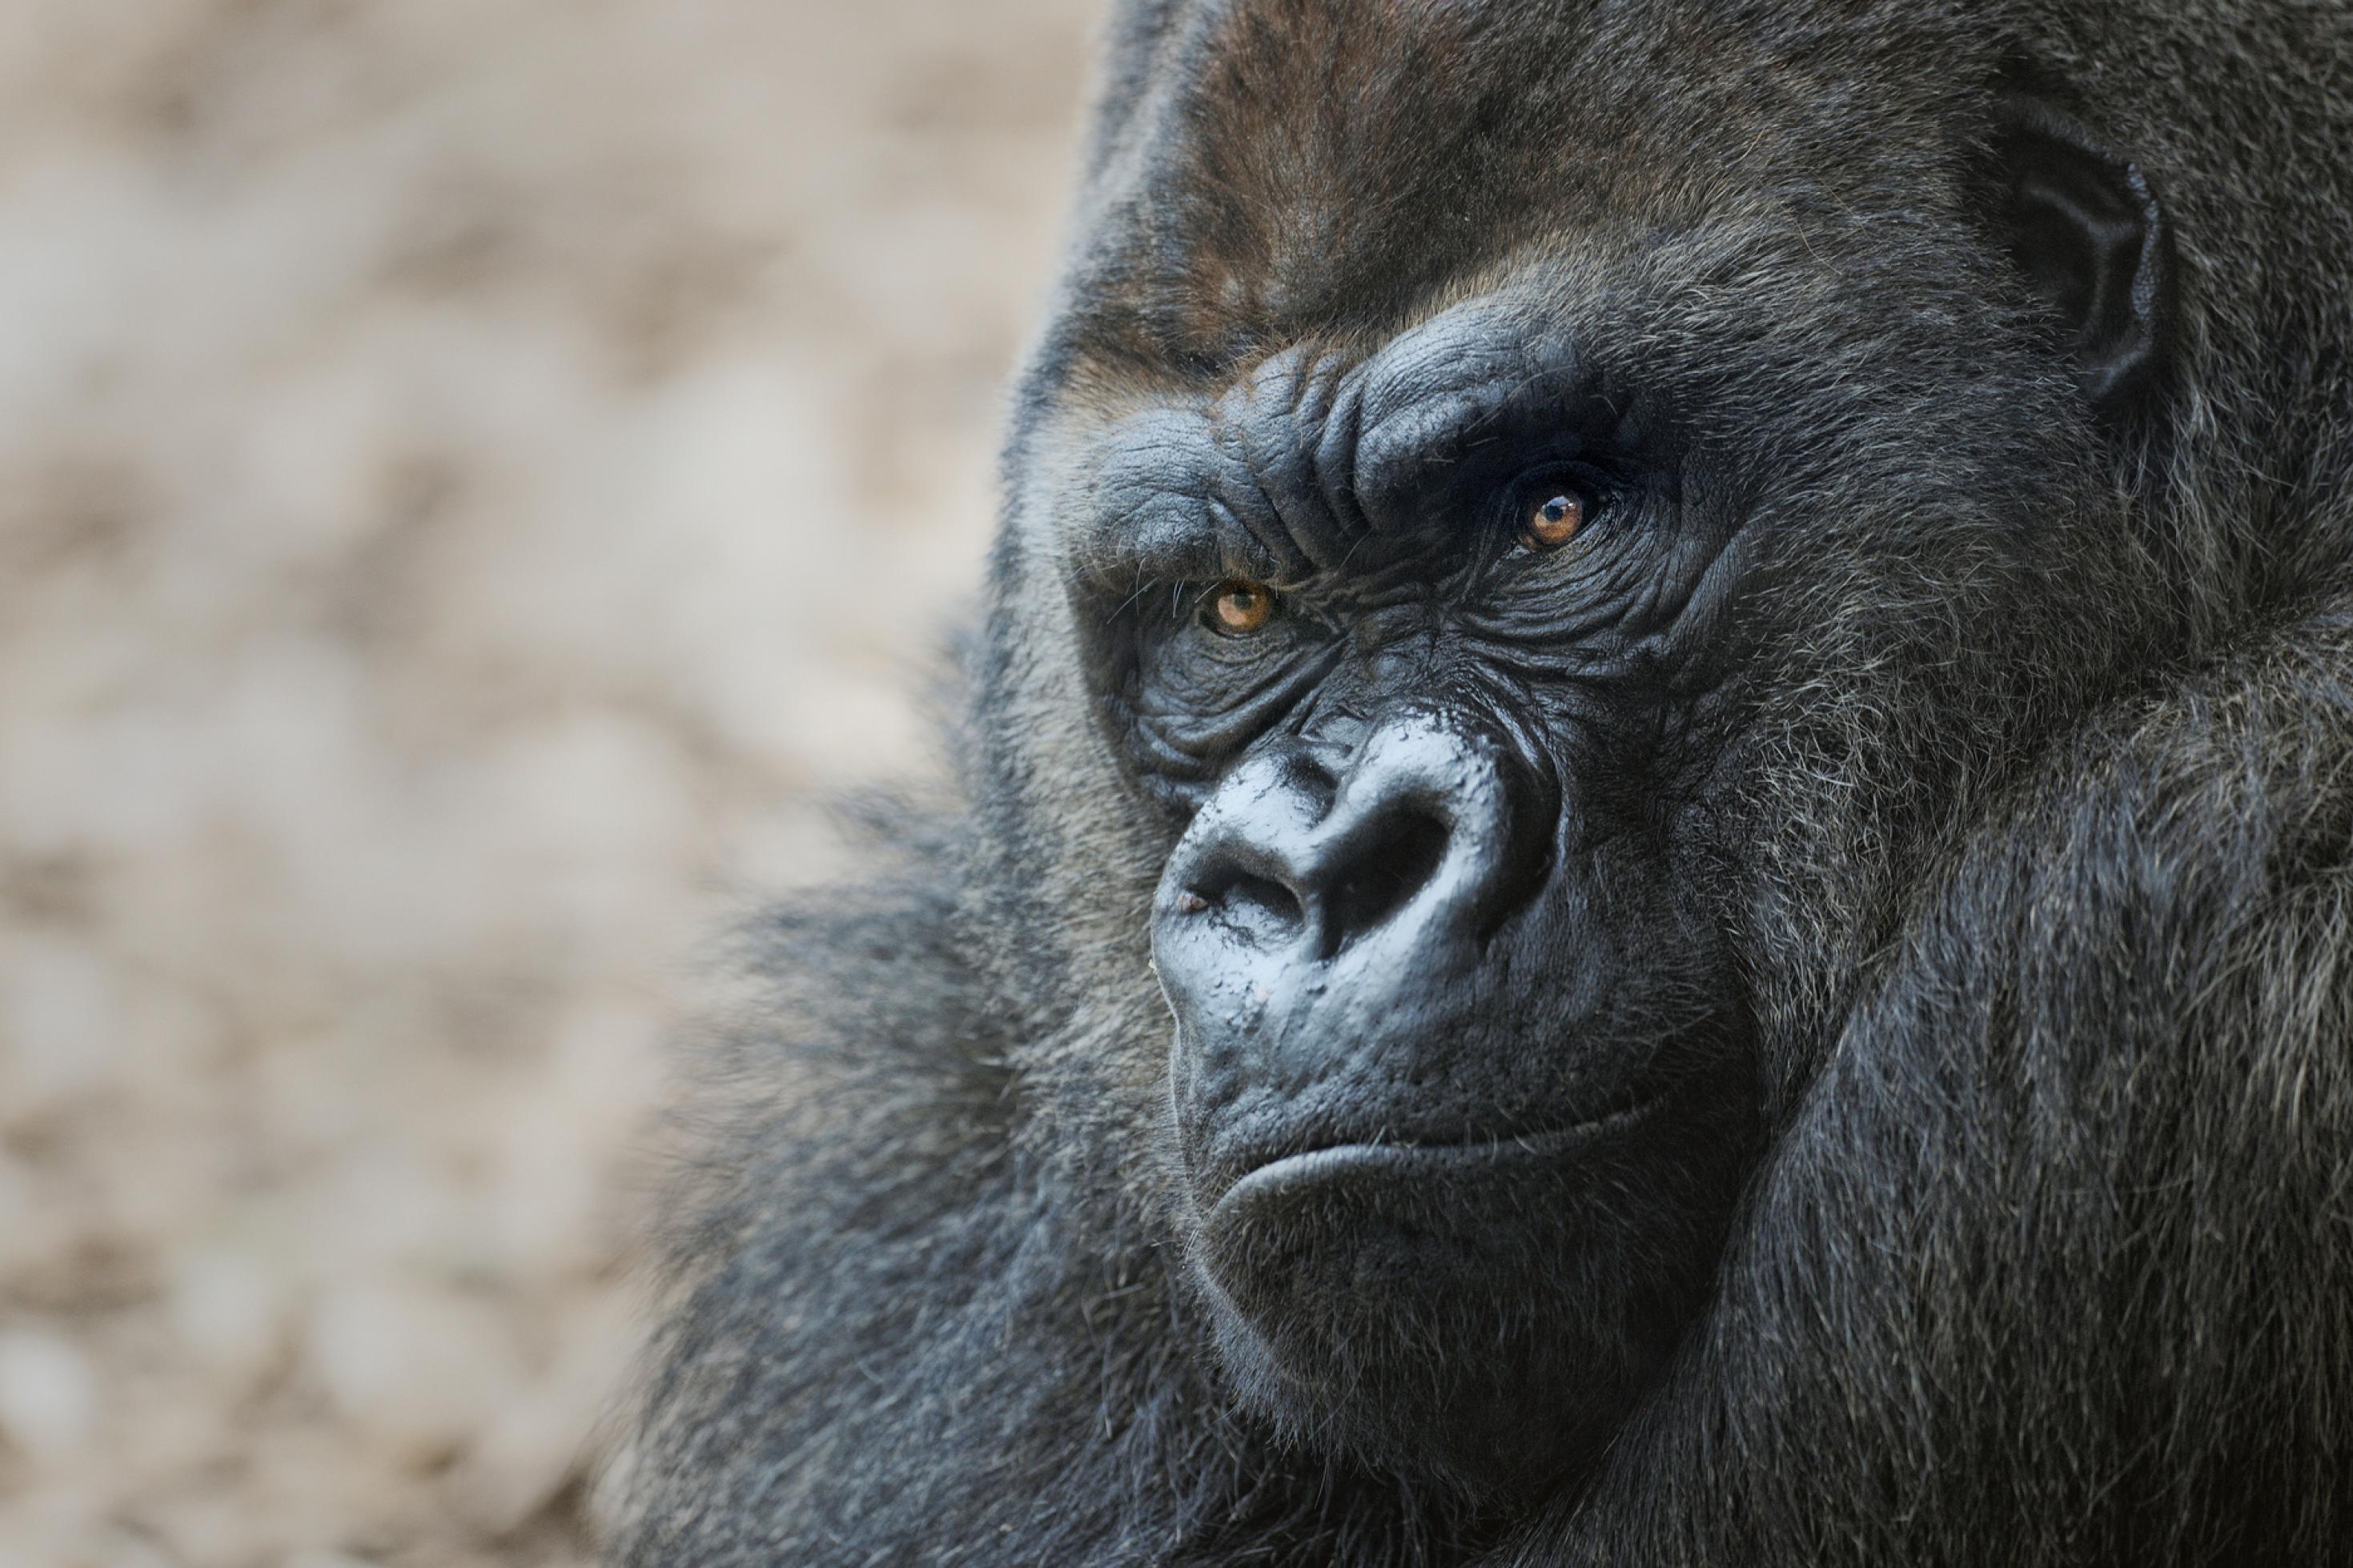 Gesicht eines Gorillas in Großaufnahme